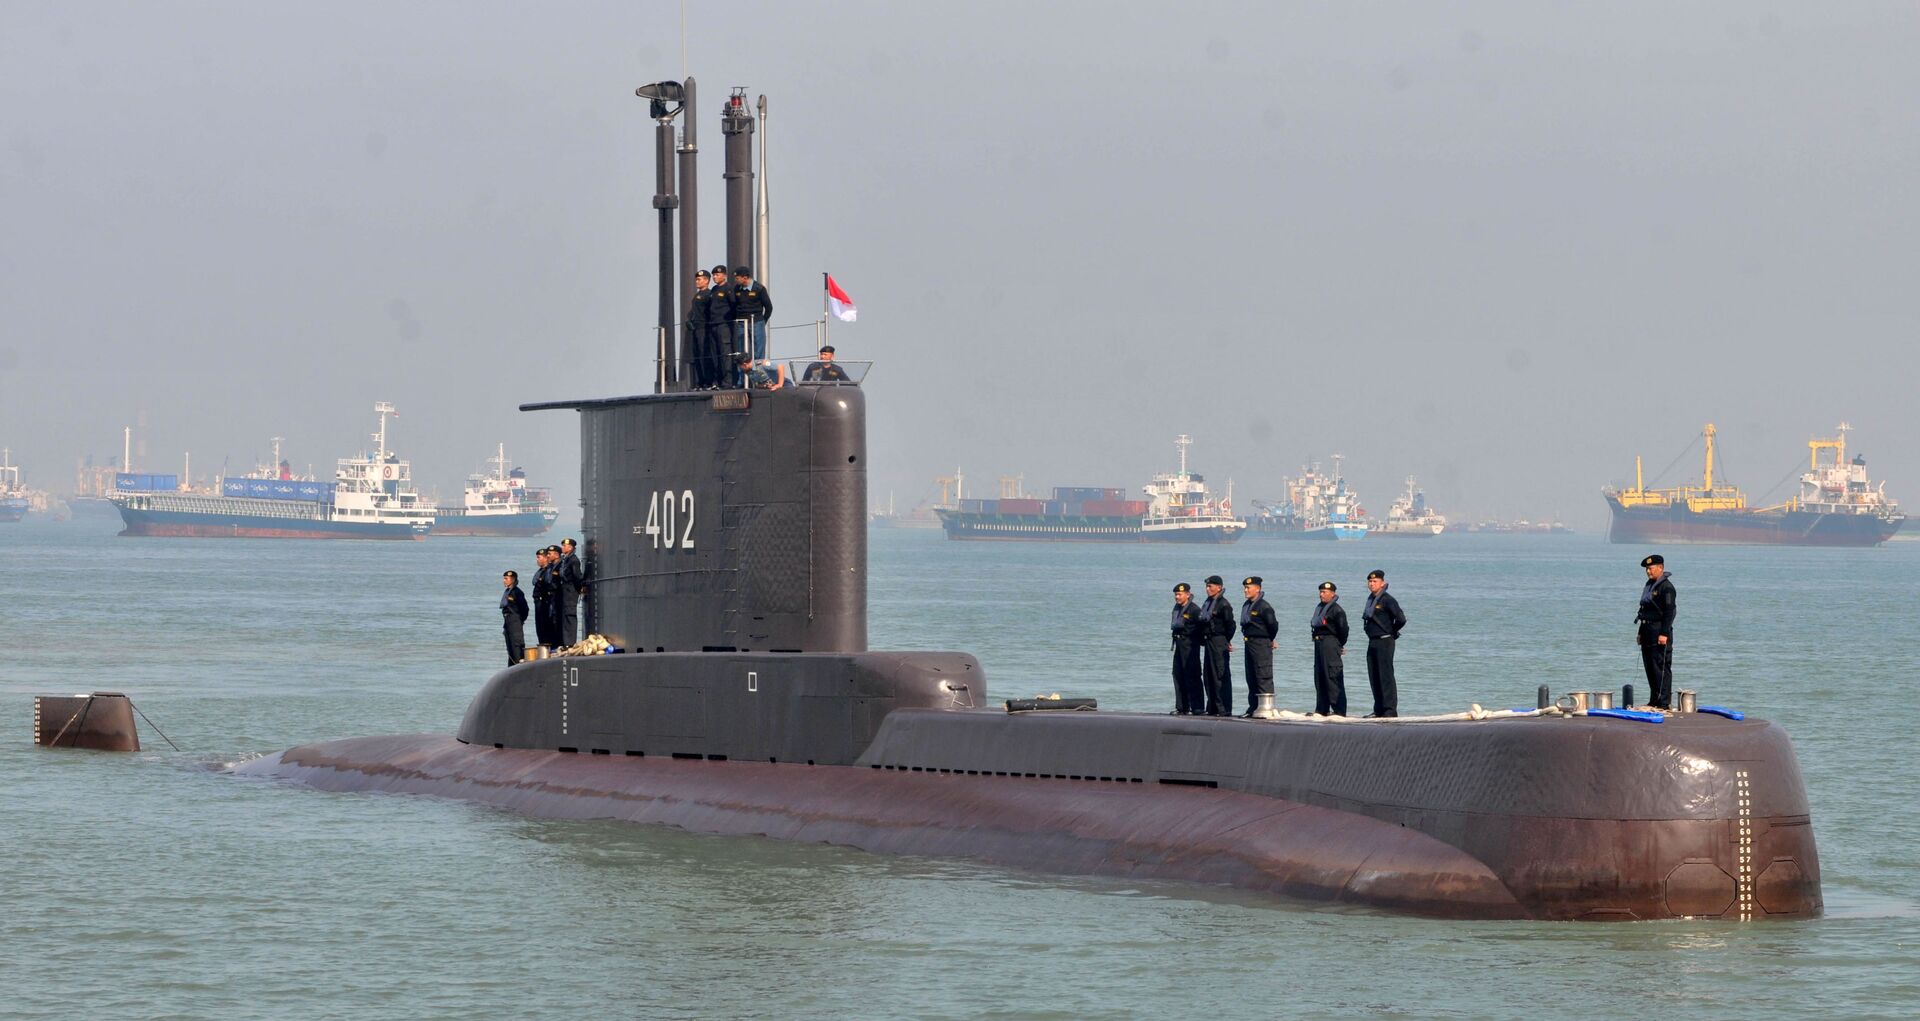 'Expressamos nossa profunda tristeza': Indonésia declara submarino desaparecido como afundado - Sputnik Brasil, 1920, 25.04.2021